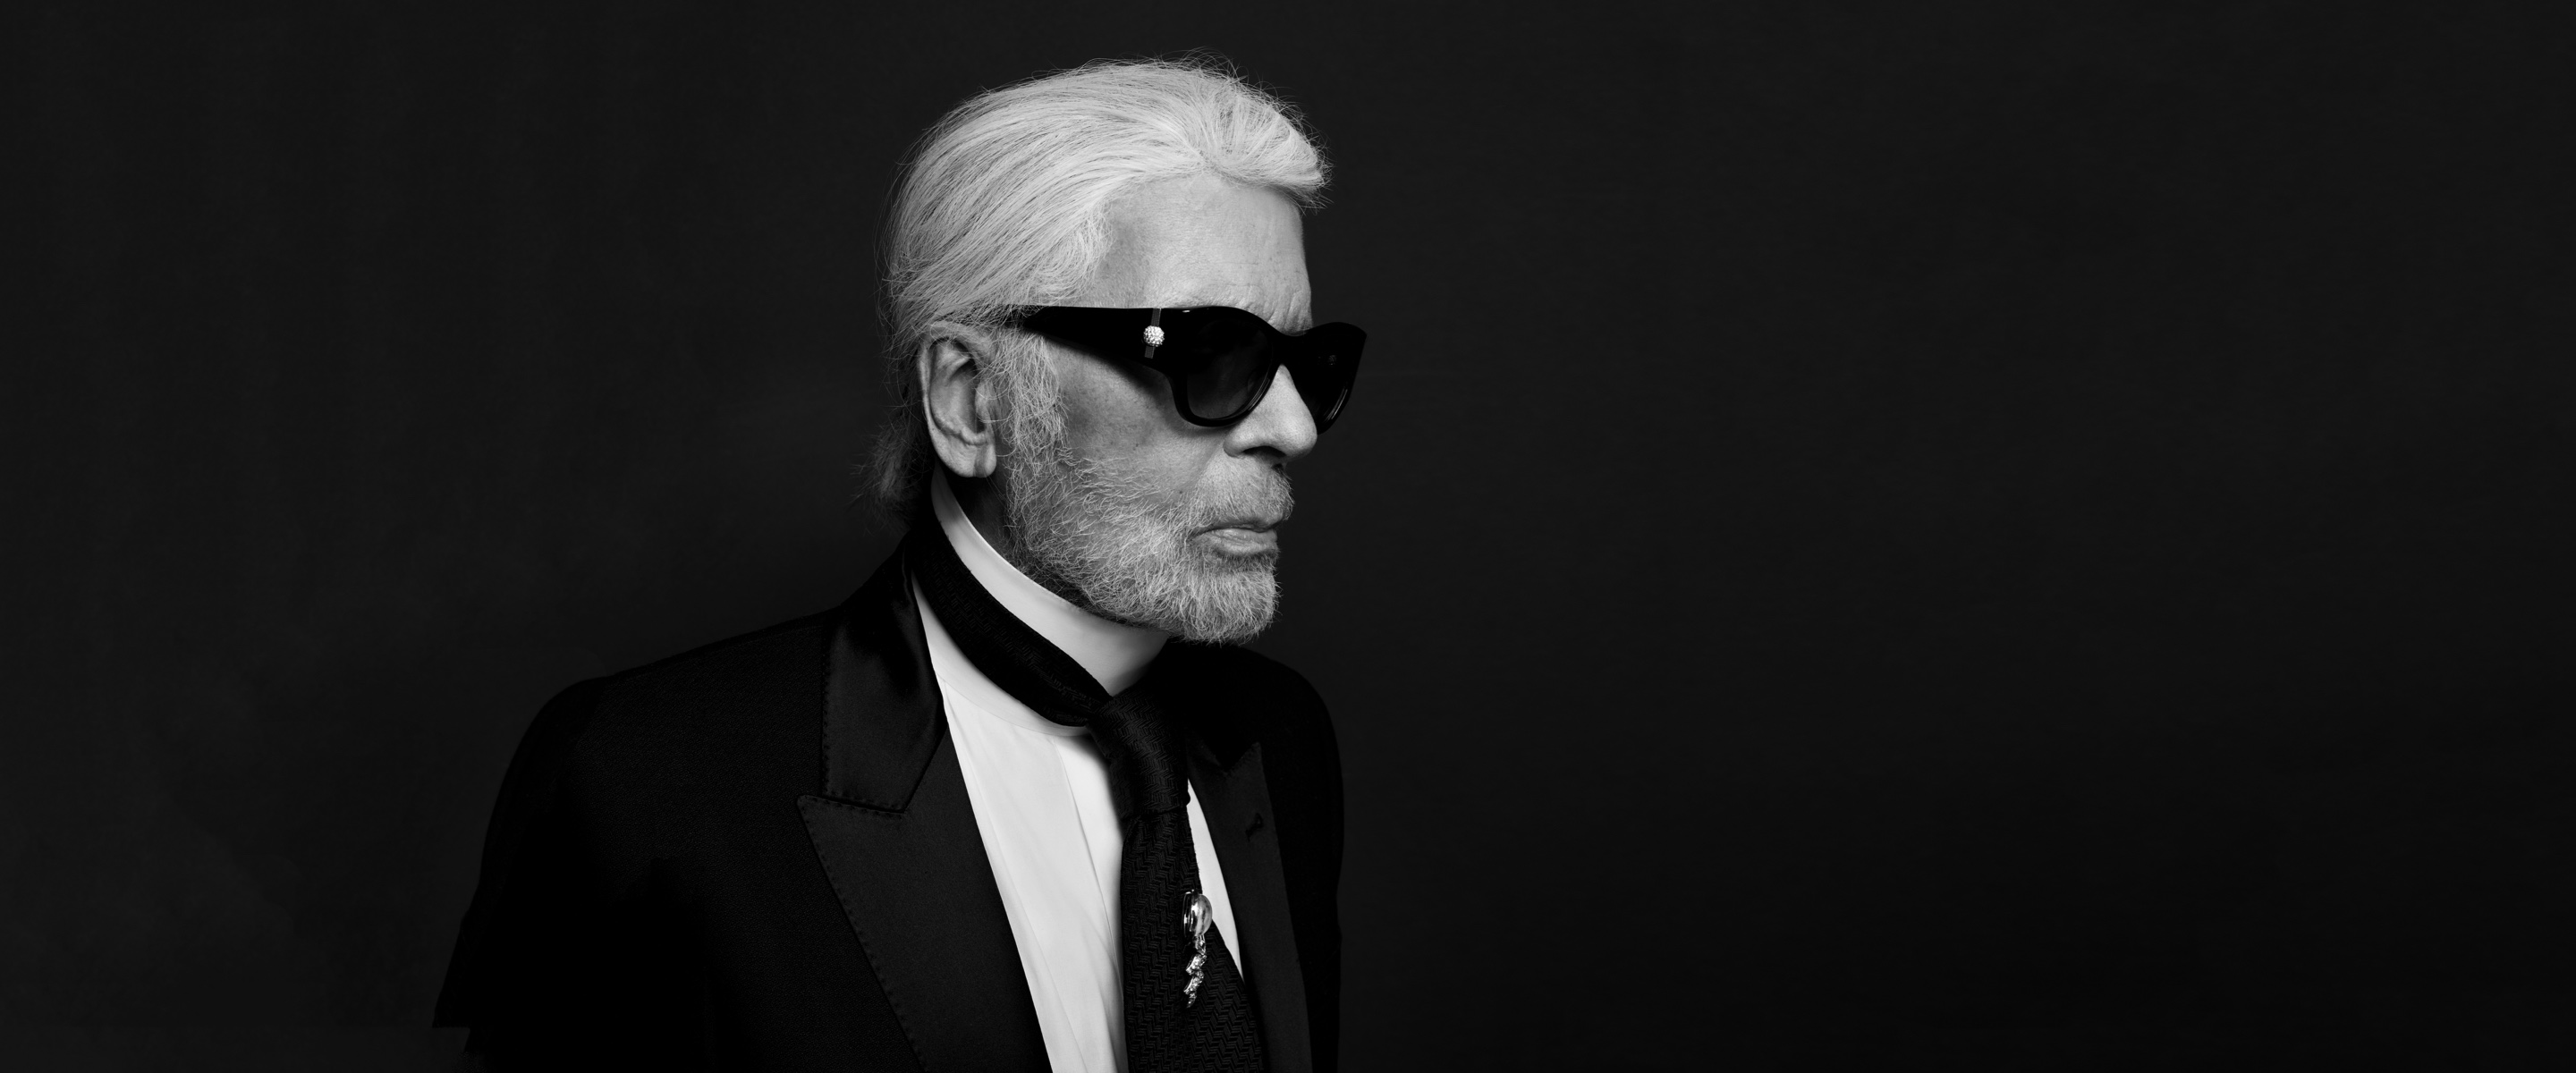 Obituary: Karl Lagerfeld, Chanel & Fendi iconic fashion designer